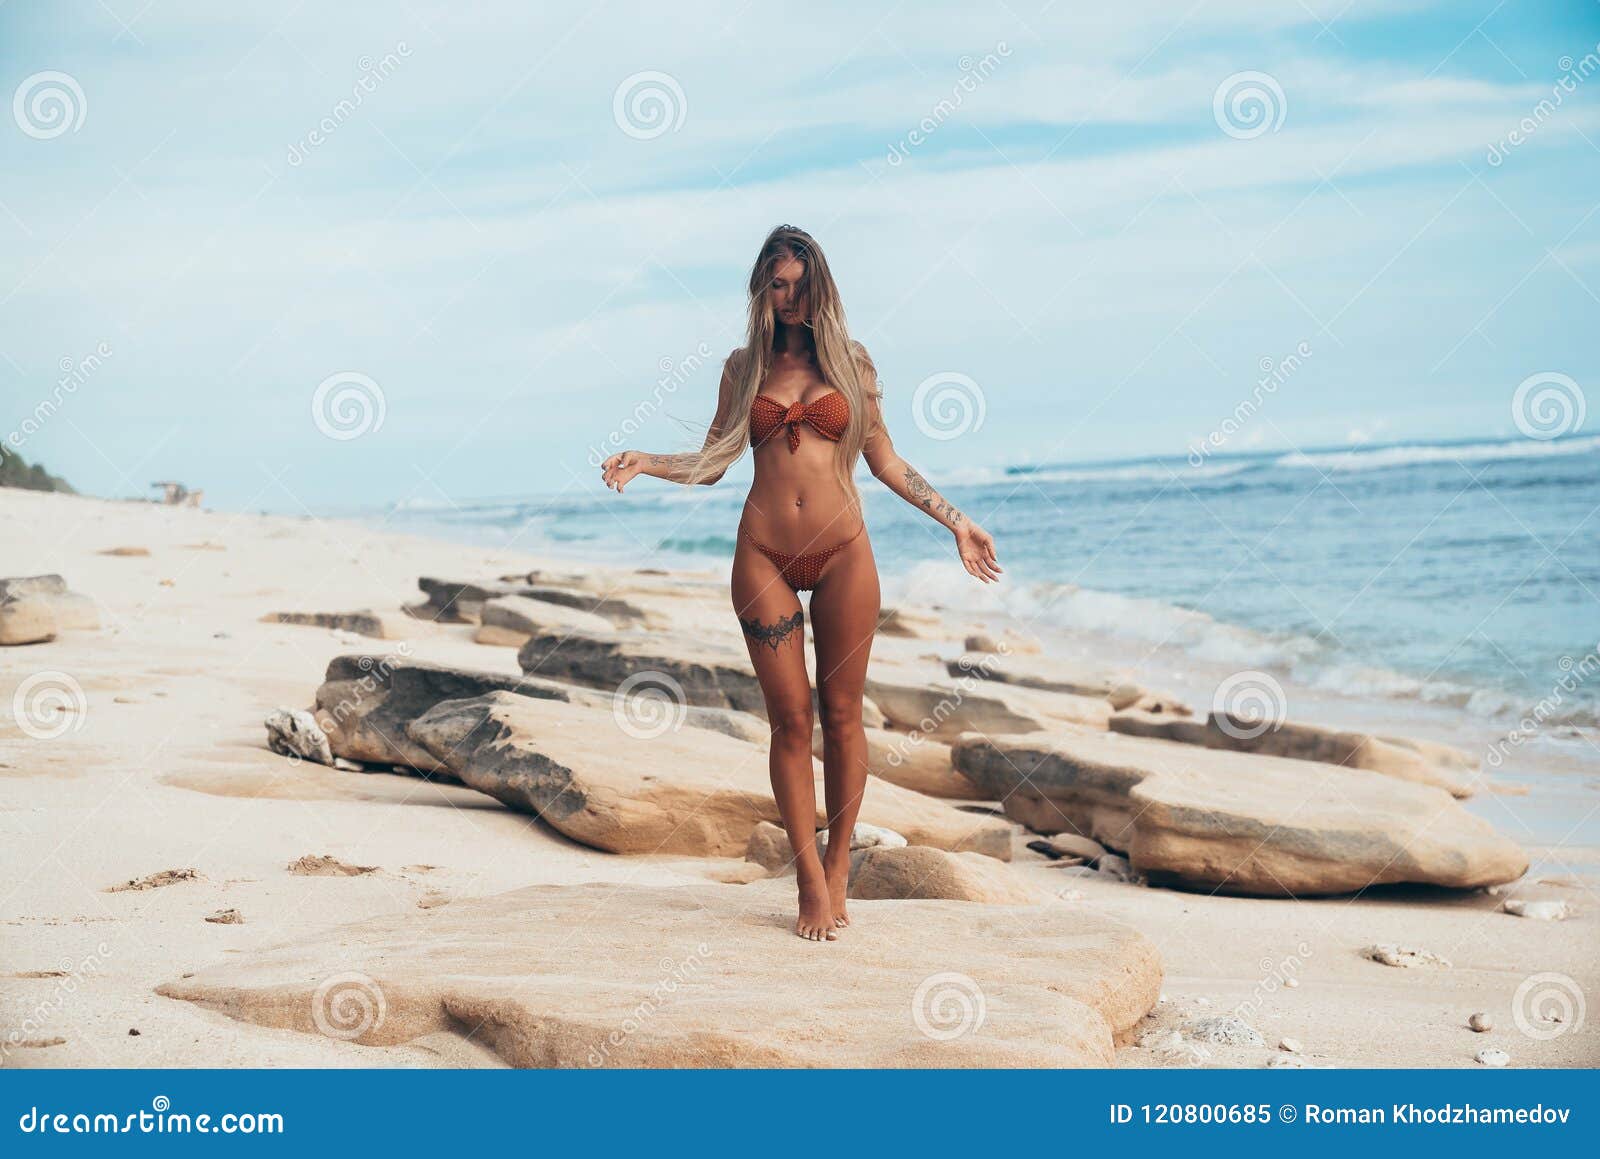 Nude beach - hot public sex